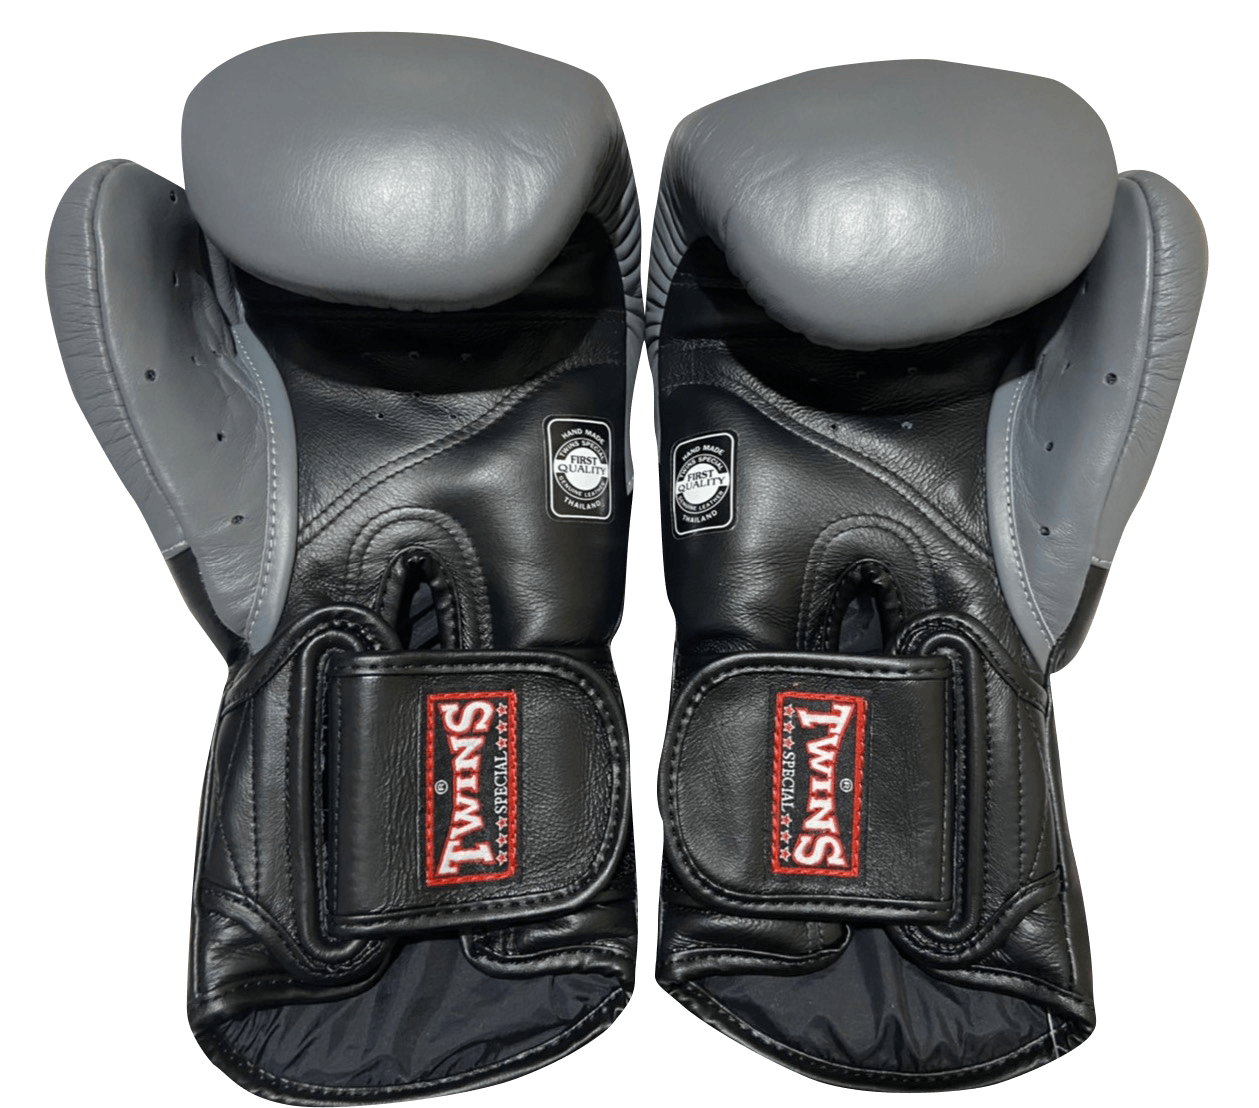 Twins Special Boxing Gloves BGVL6 Black Grey - SUPER EXPORT SHOP